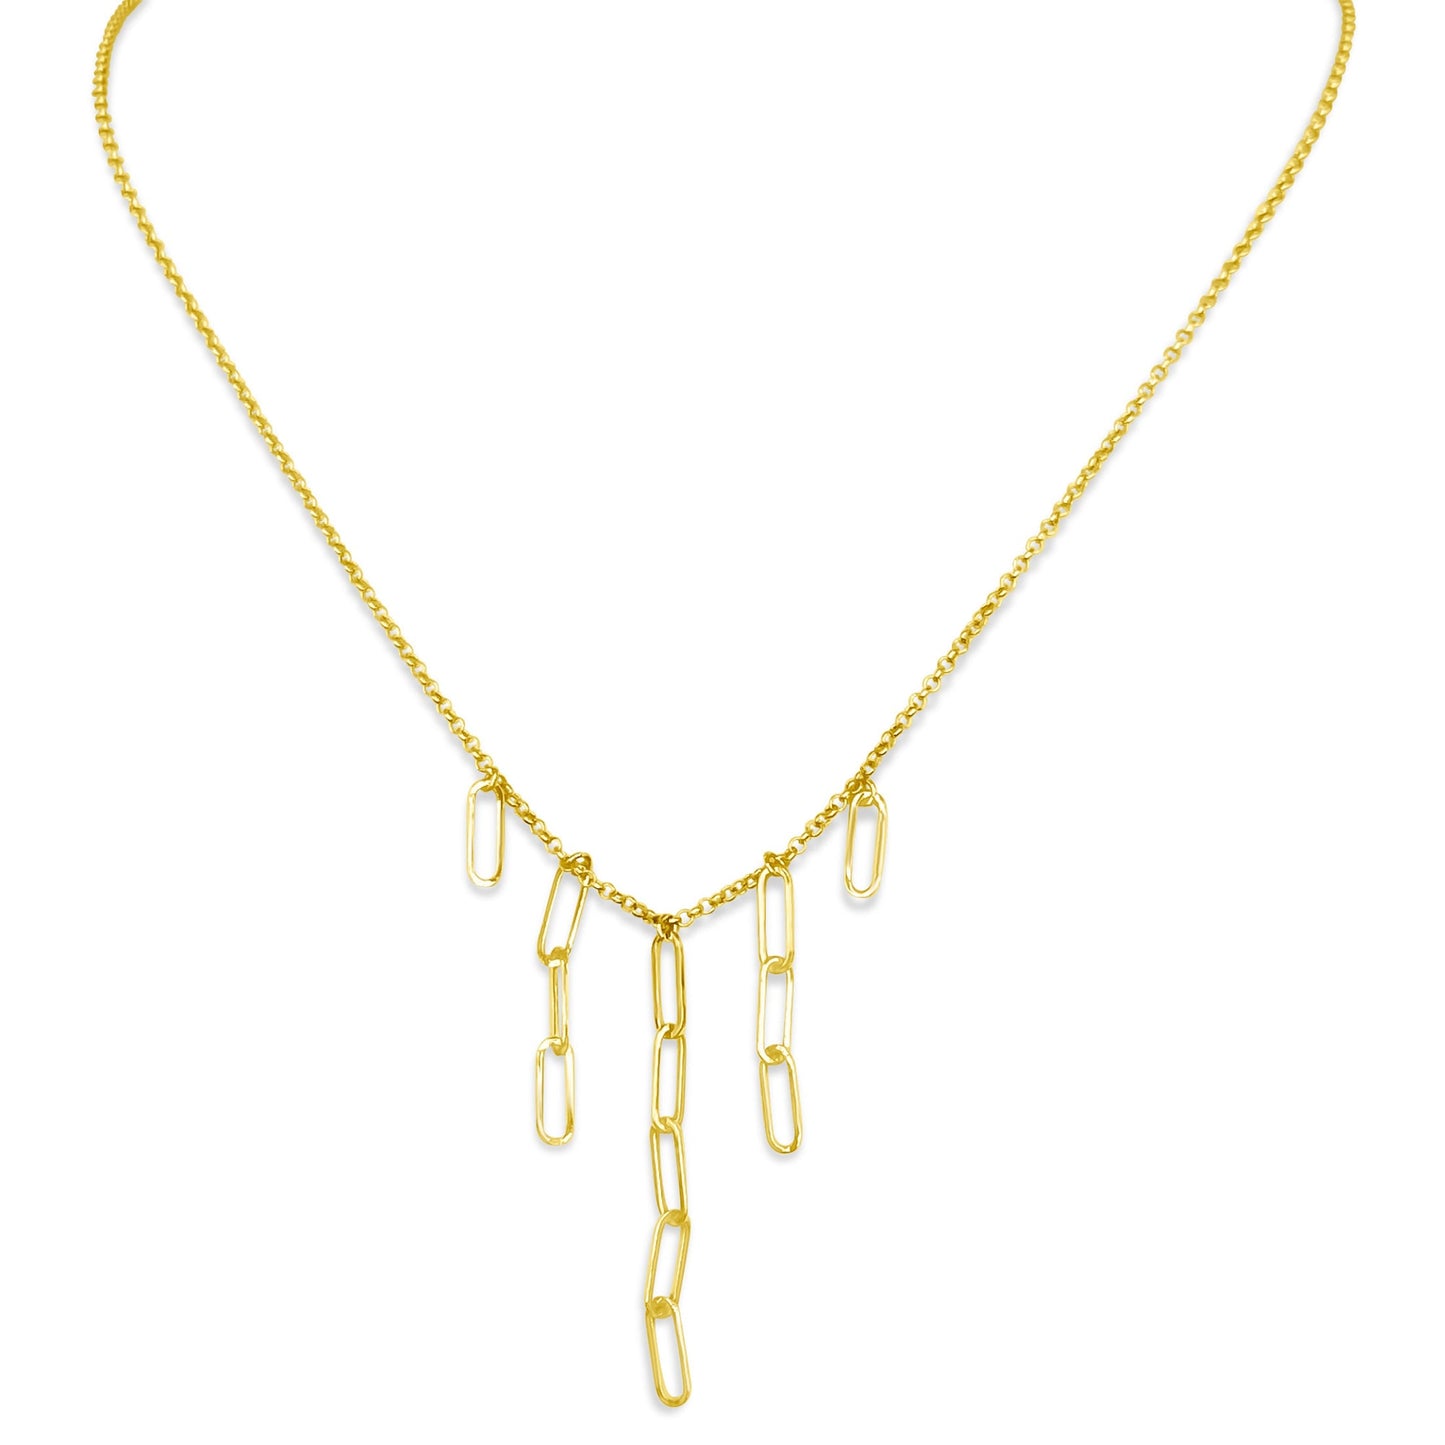 Séchic 14k Paperclip Chain 5 Drop Necklace 17"